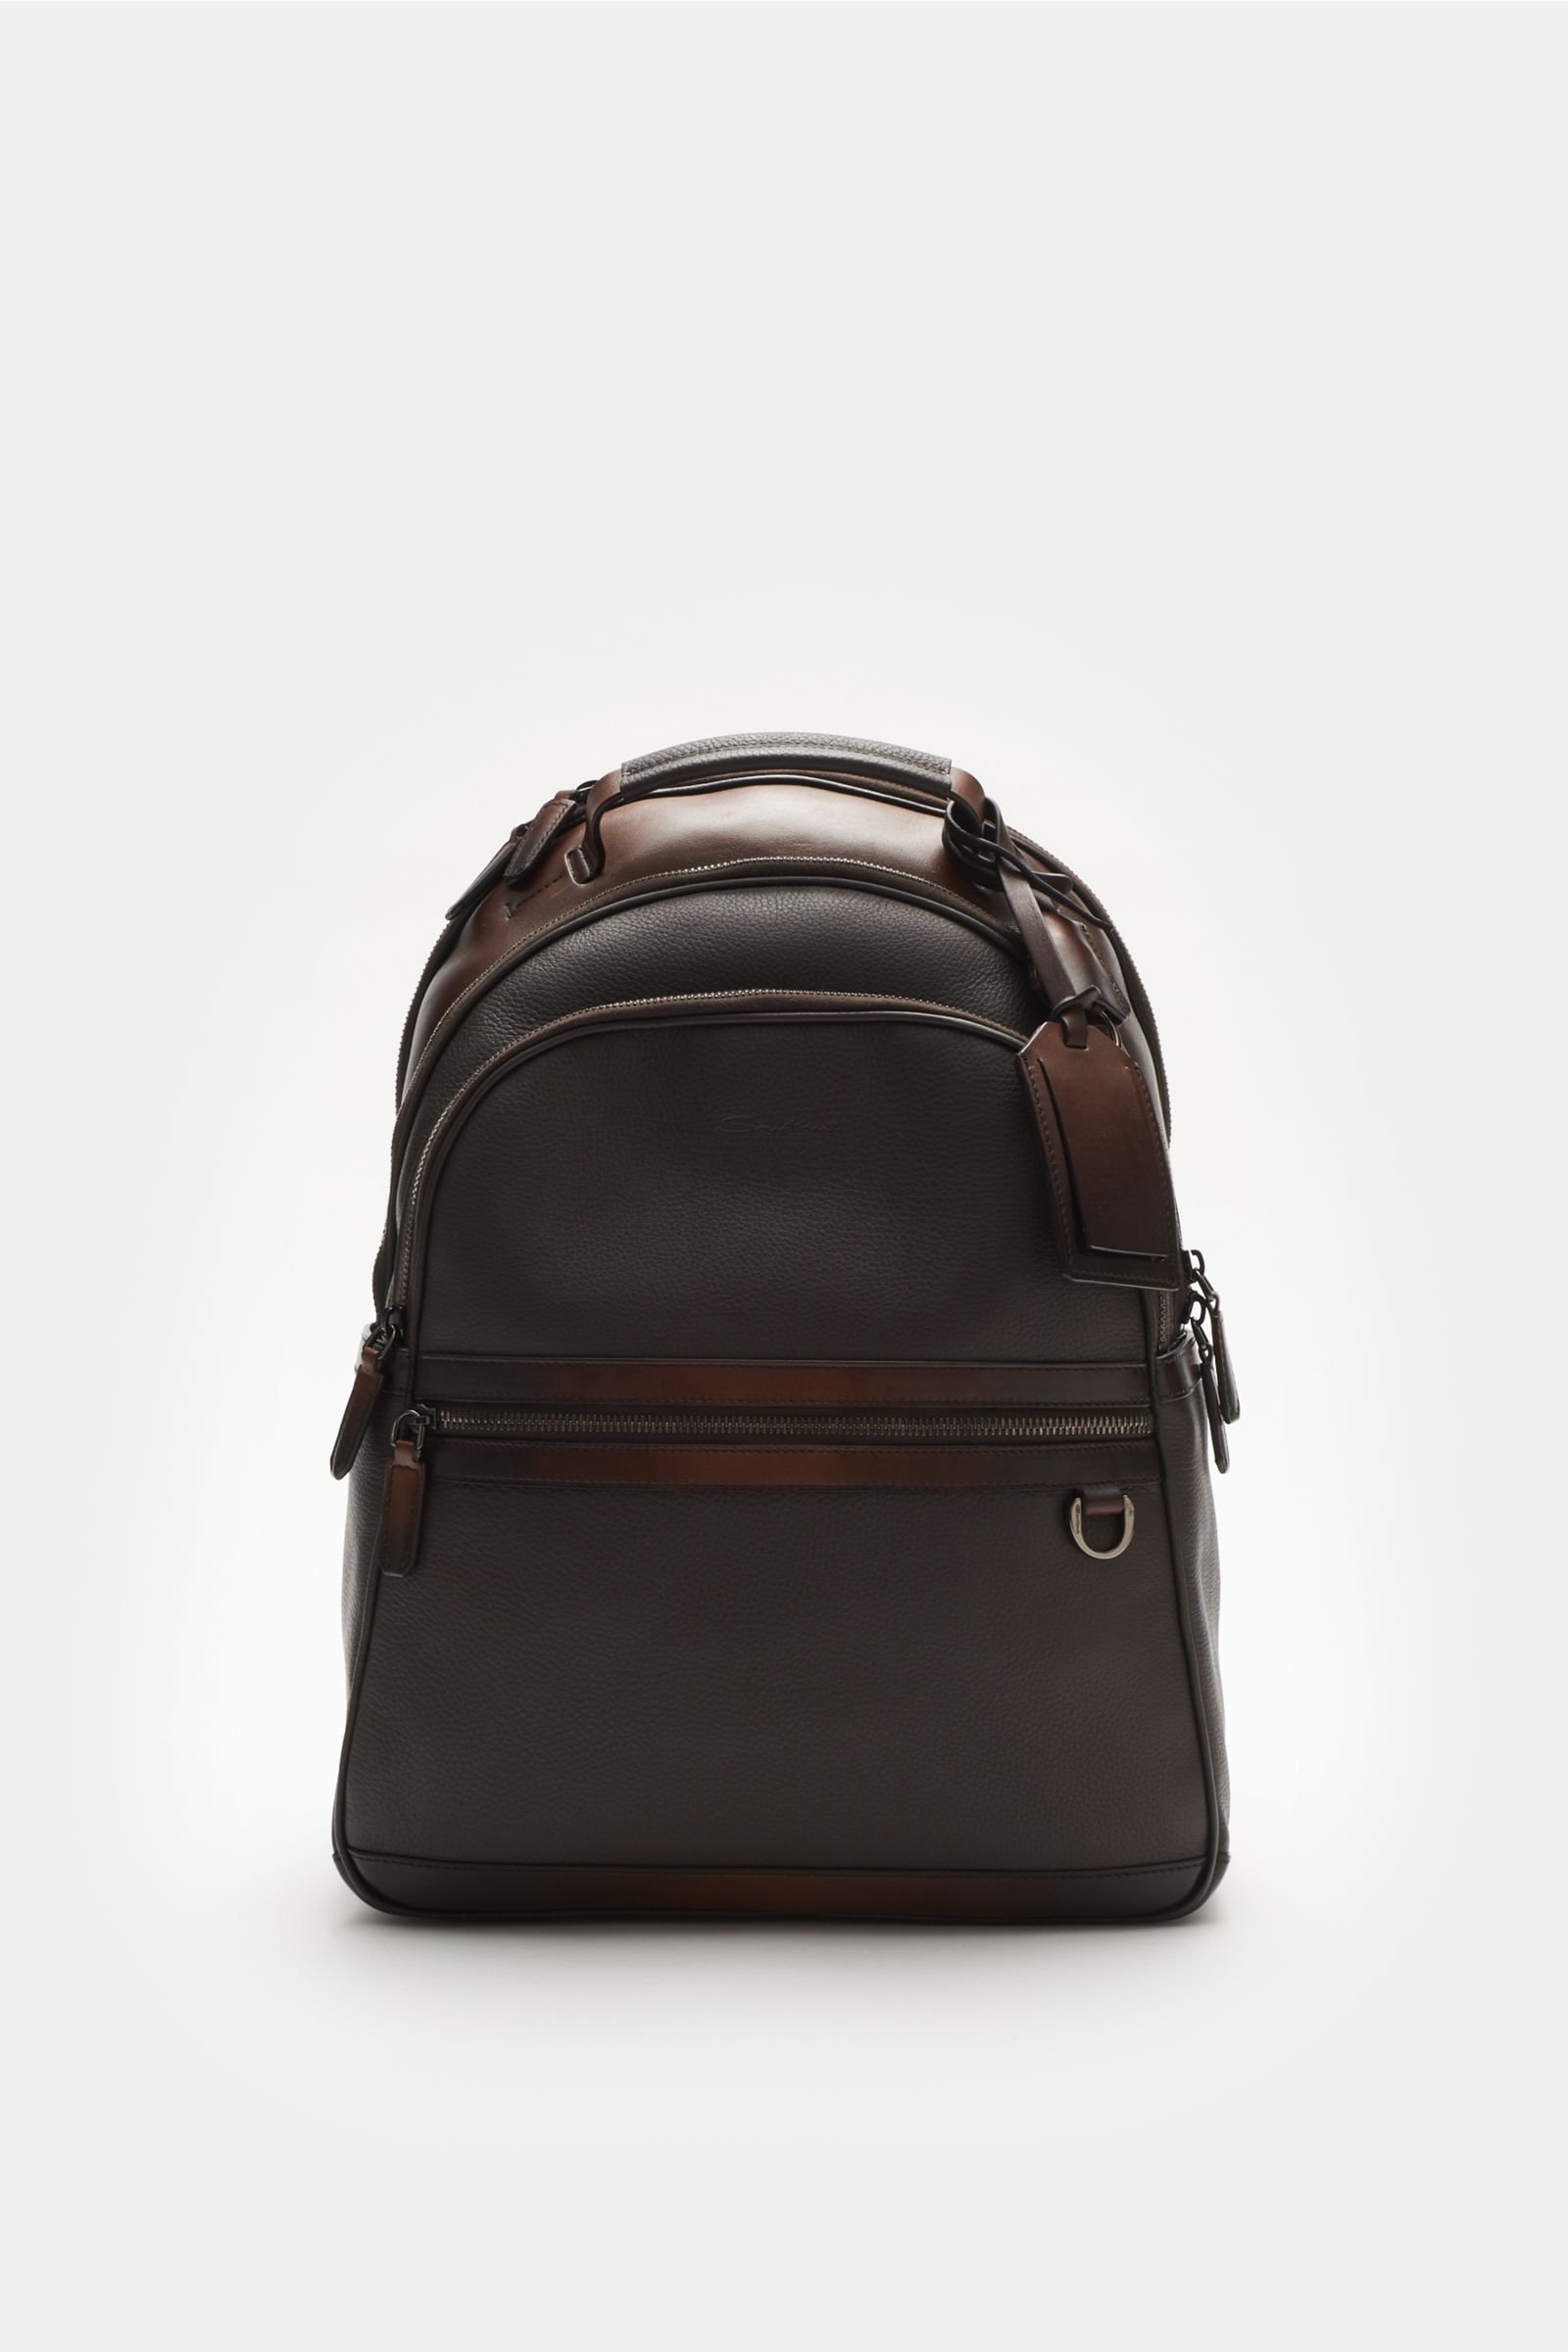 Backpack dark brown